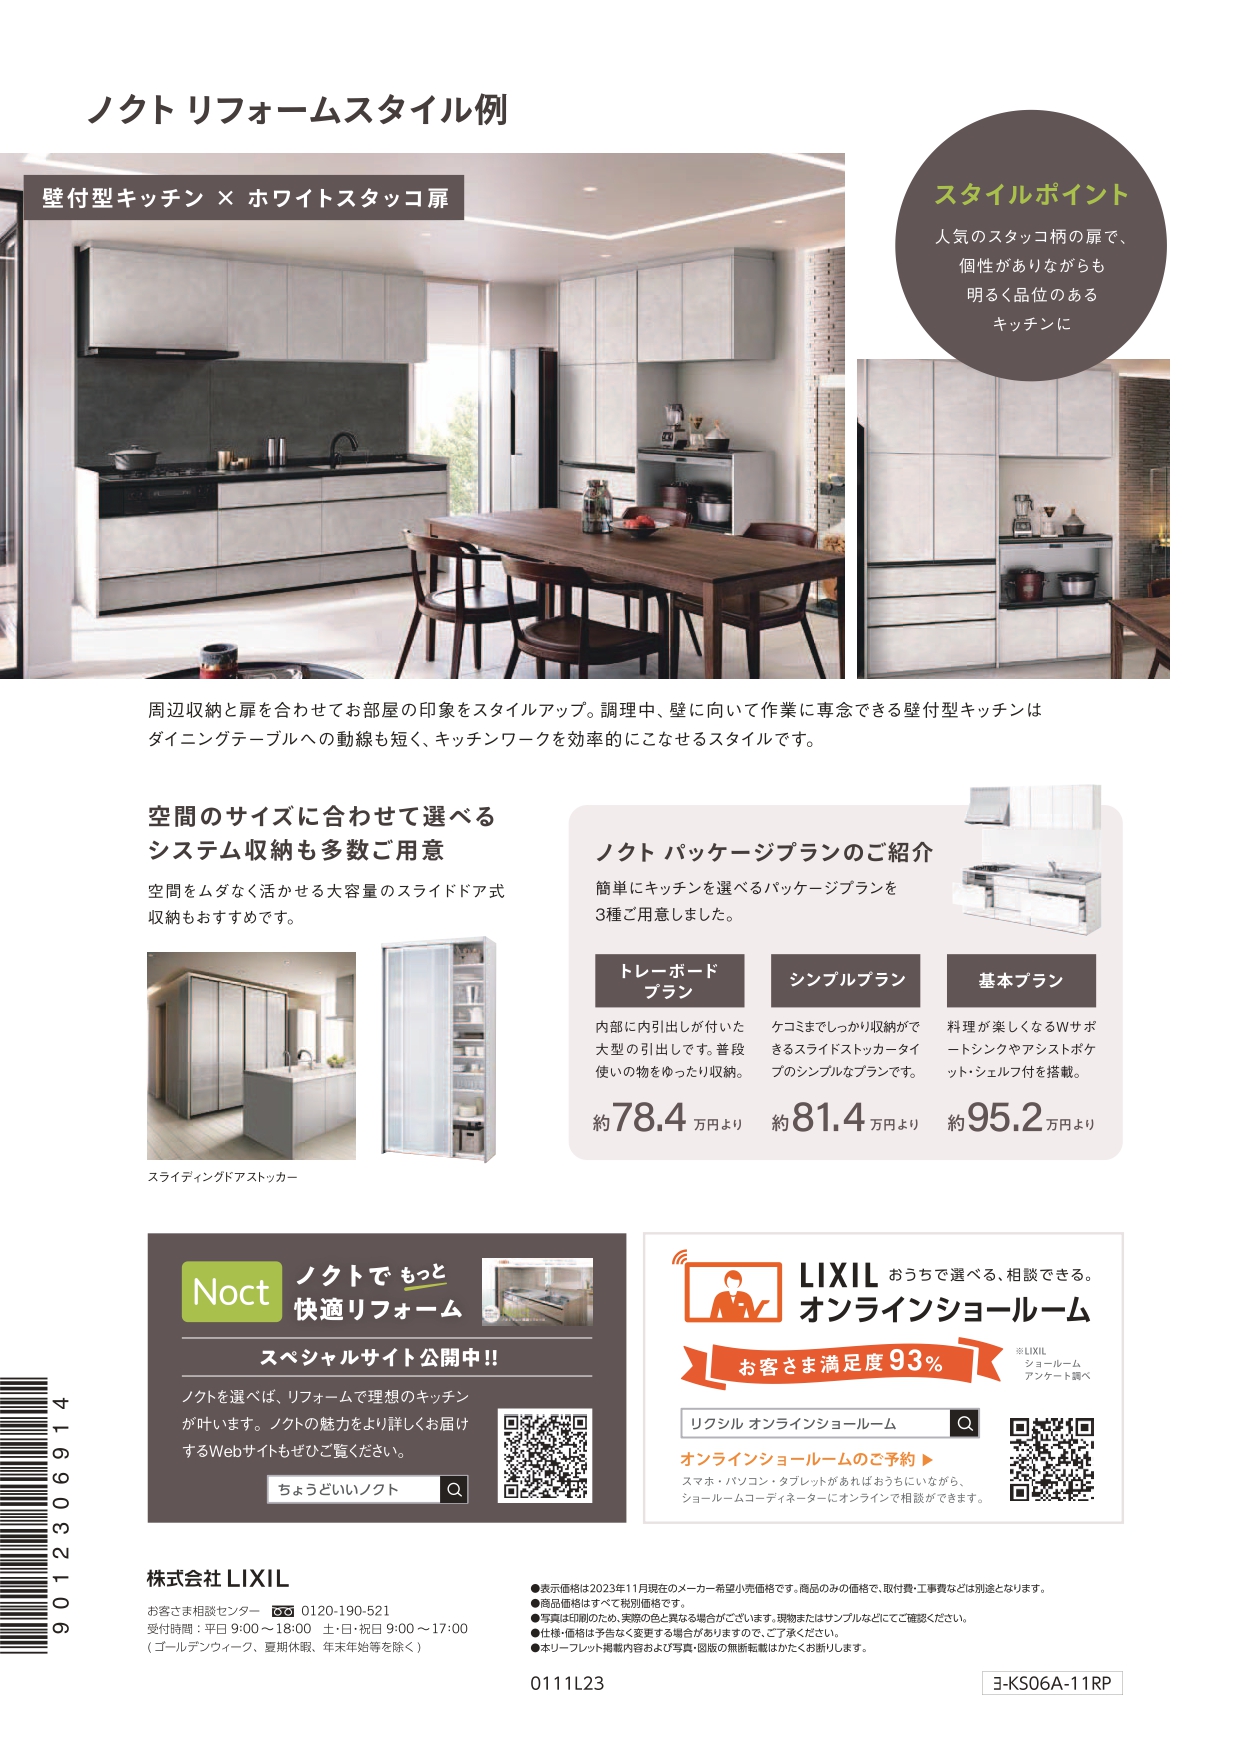 キッチンの快適リフォーム NCCトーヨー住器 諏訪店のブログ 写真2